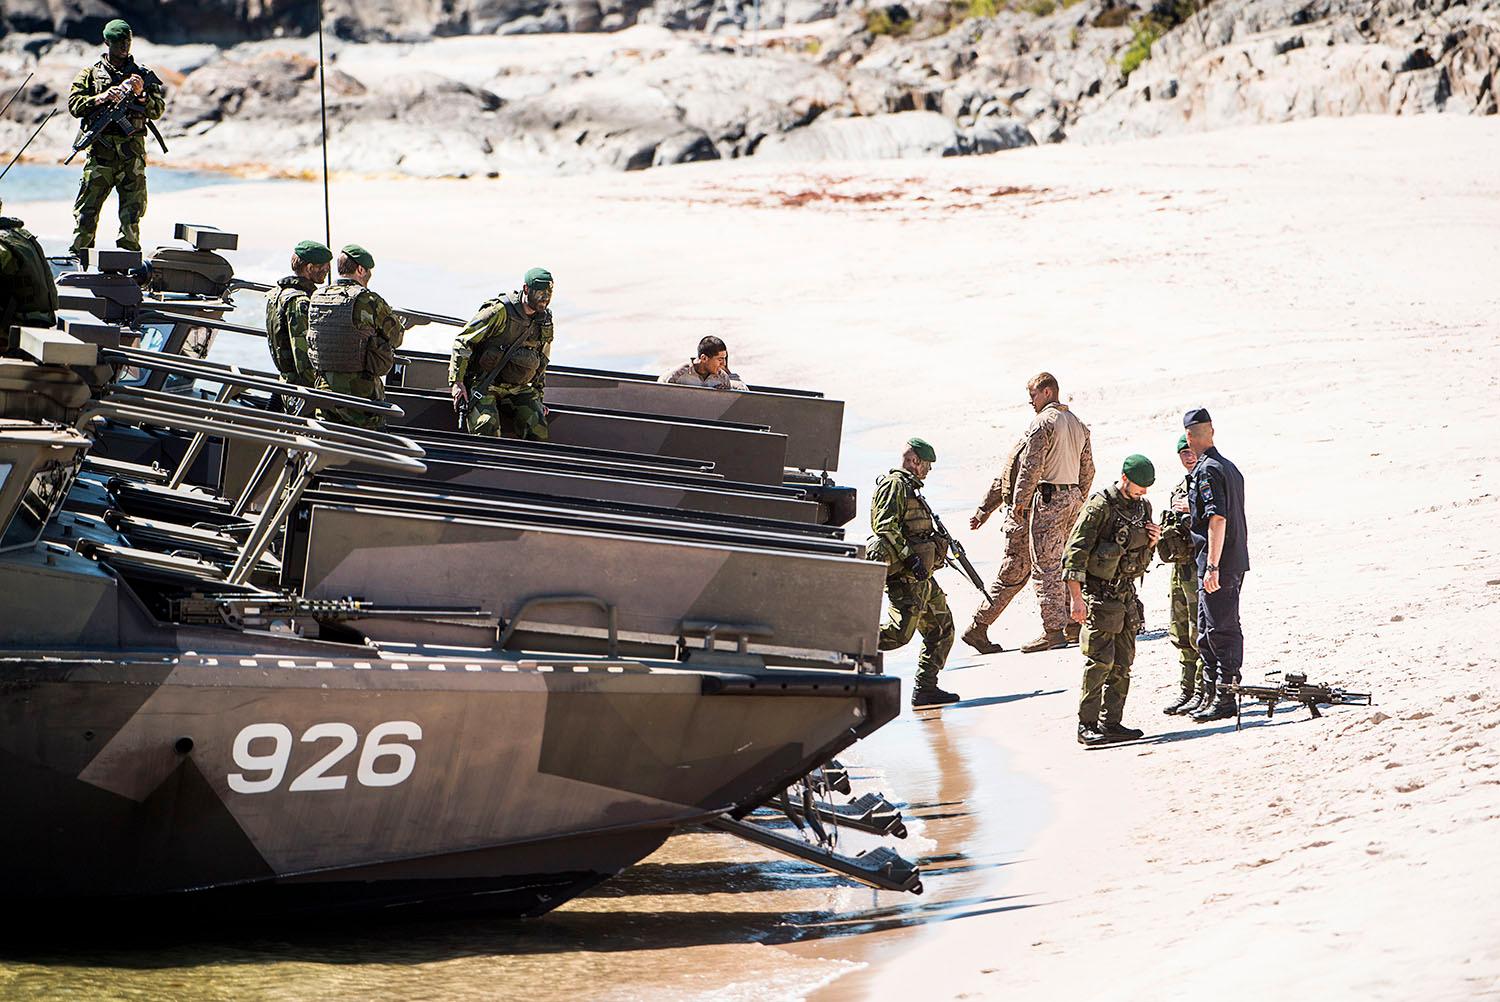 Svenska stridsbåt 90 som väntar på att transportera amfibiesoldater från bland annat Sverige och USA.